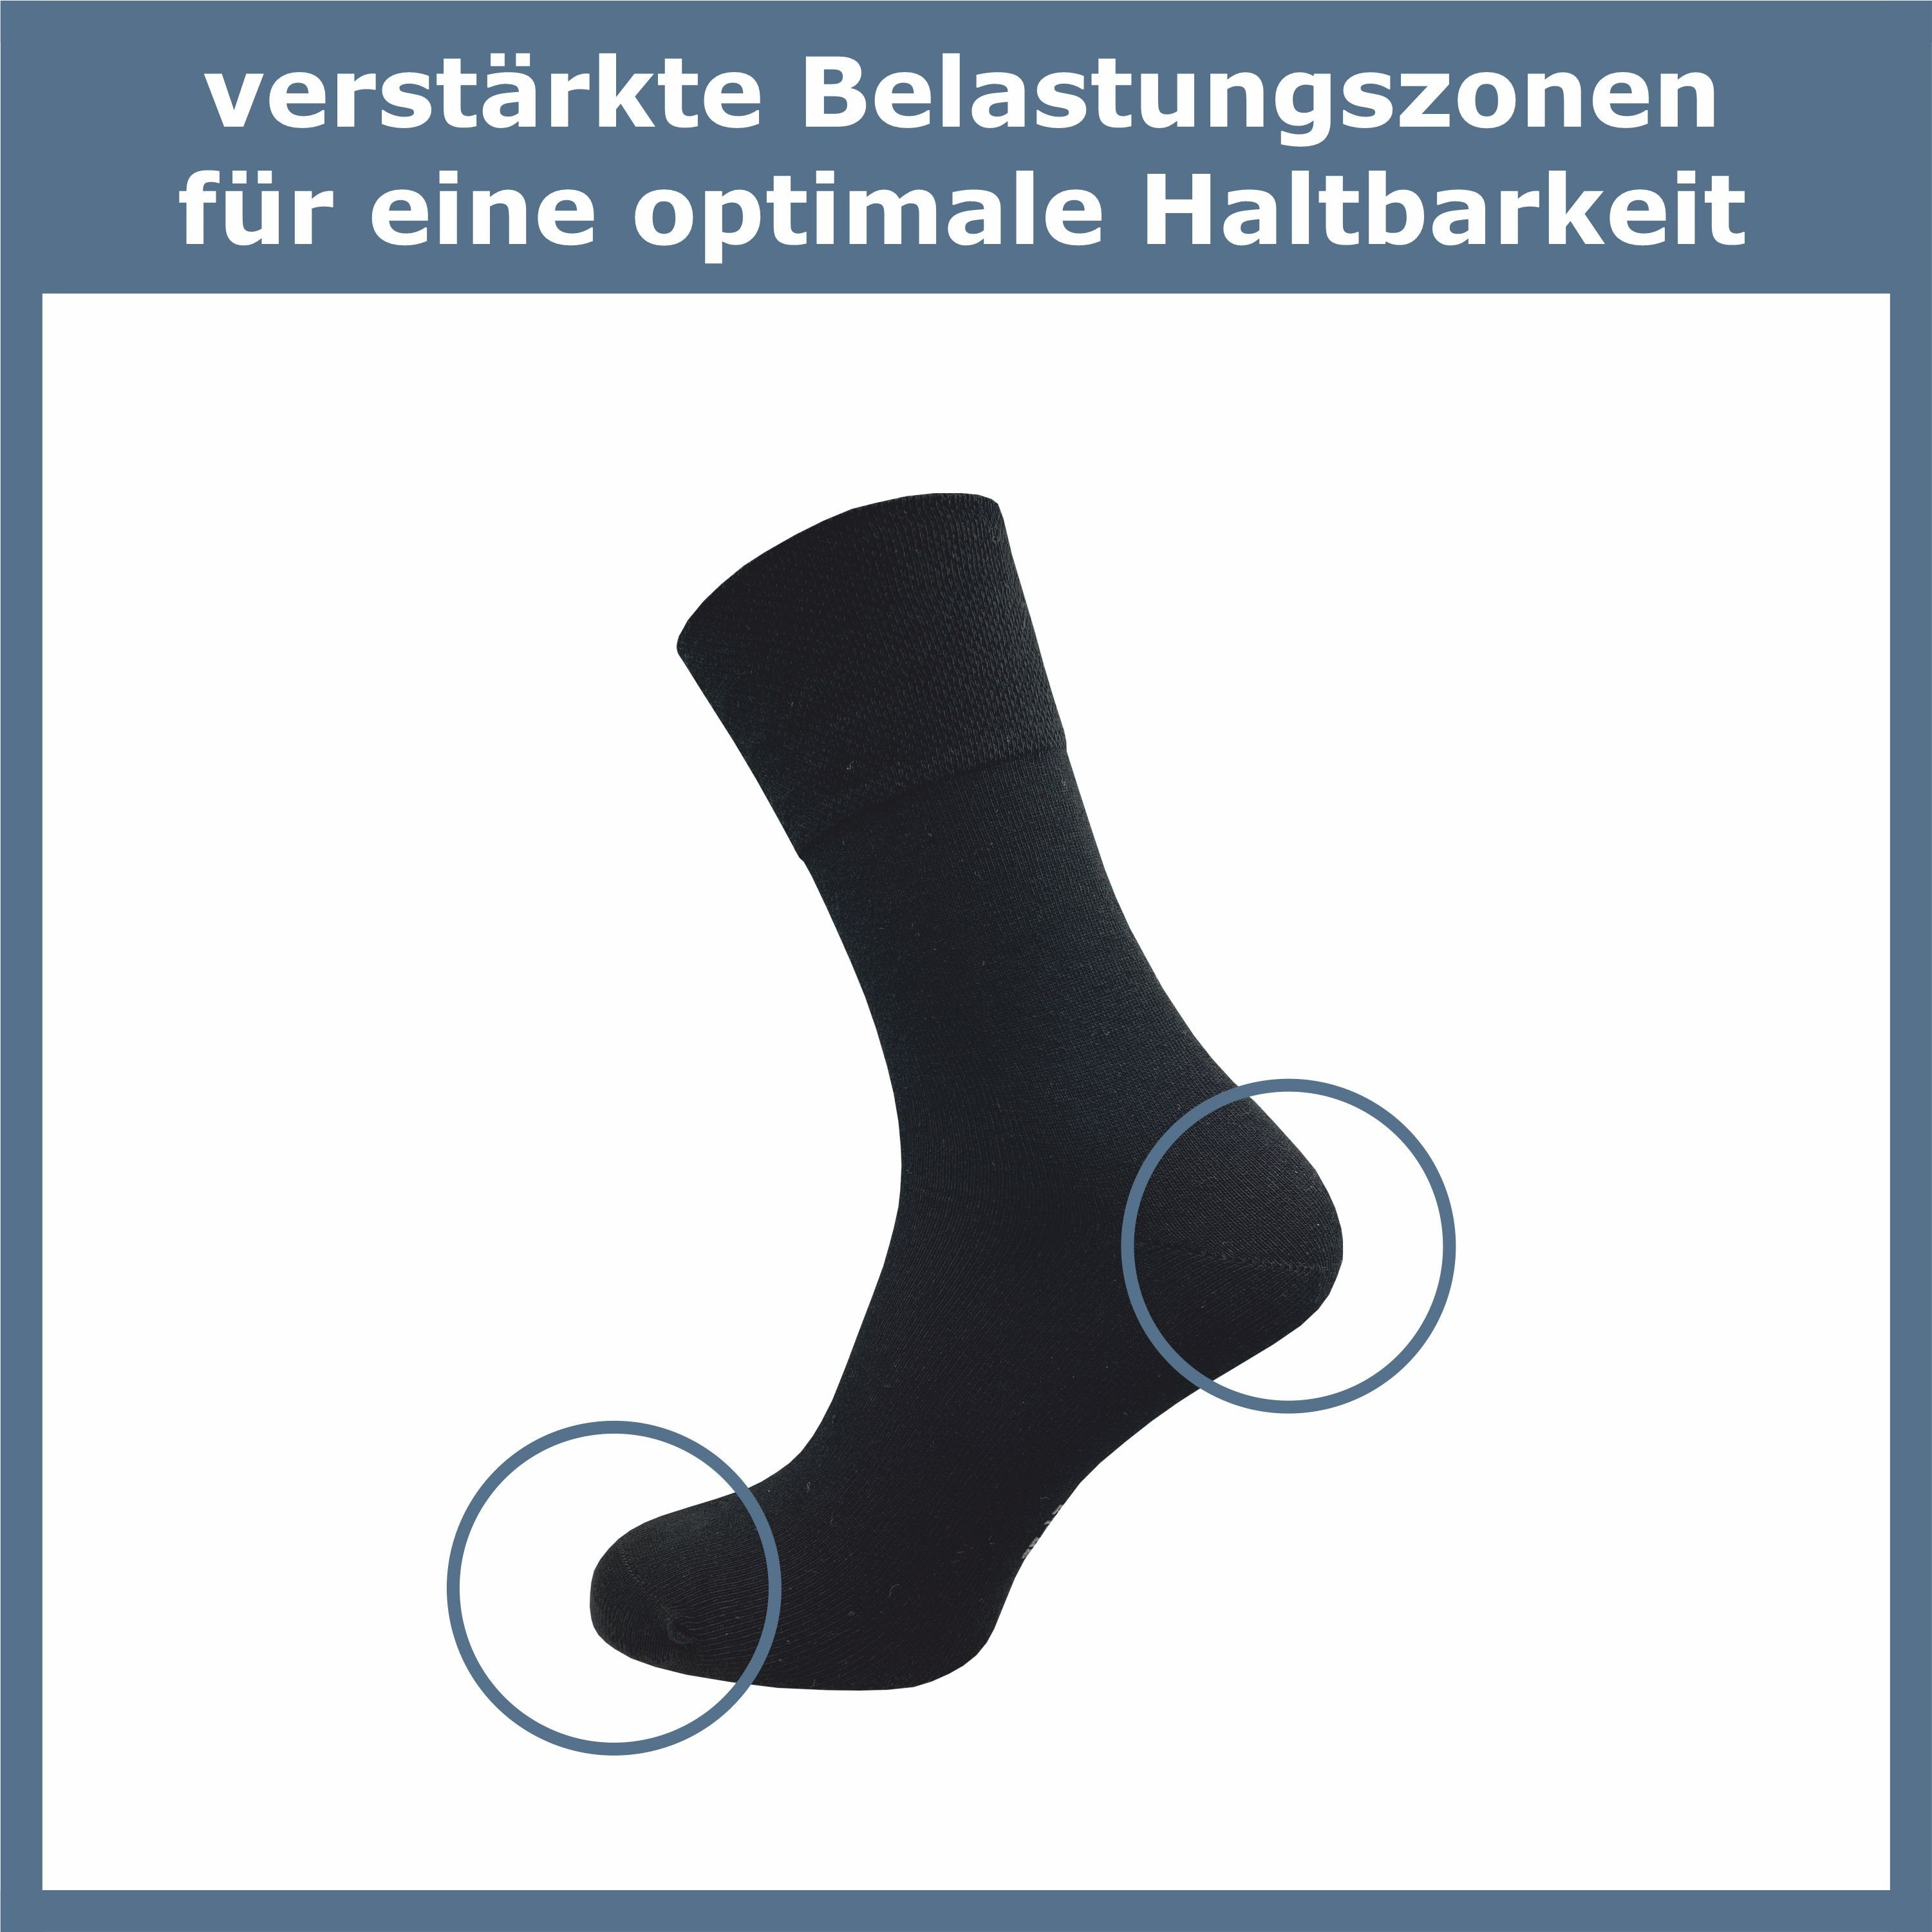 Komfortbund; grau drückende (6 Socke & Diabetikersocken weitere & Business - Naht GAWILO Piquet-Strick für breiter ohne Paar) extra ohne Gummidruck in am schwarz, Damen,